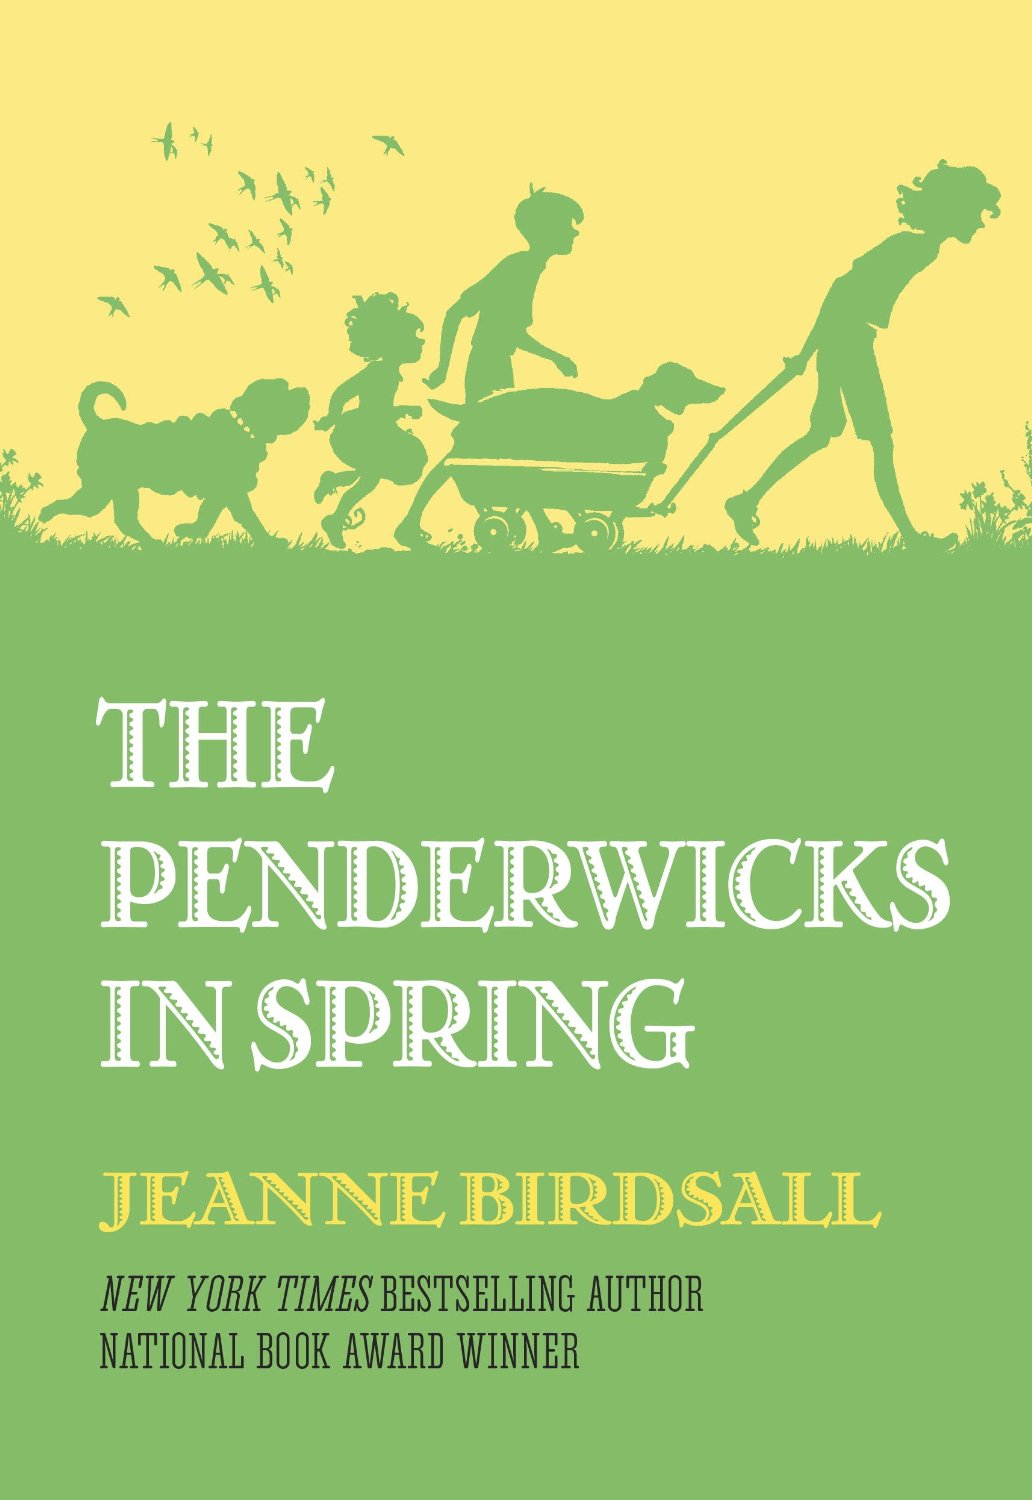 Jeanne Birdsall, The Penderwicks in Spring